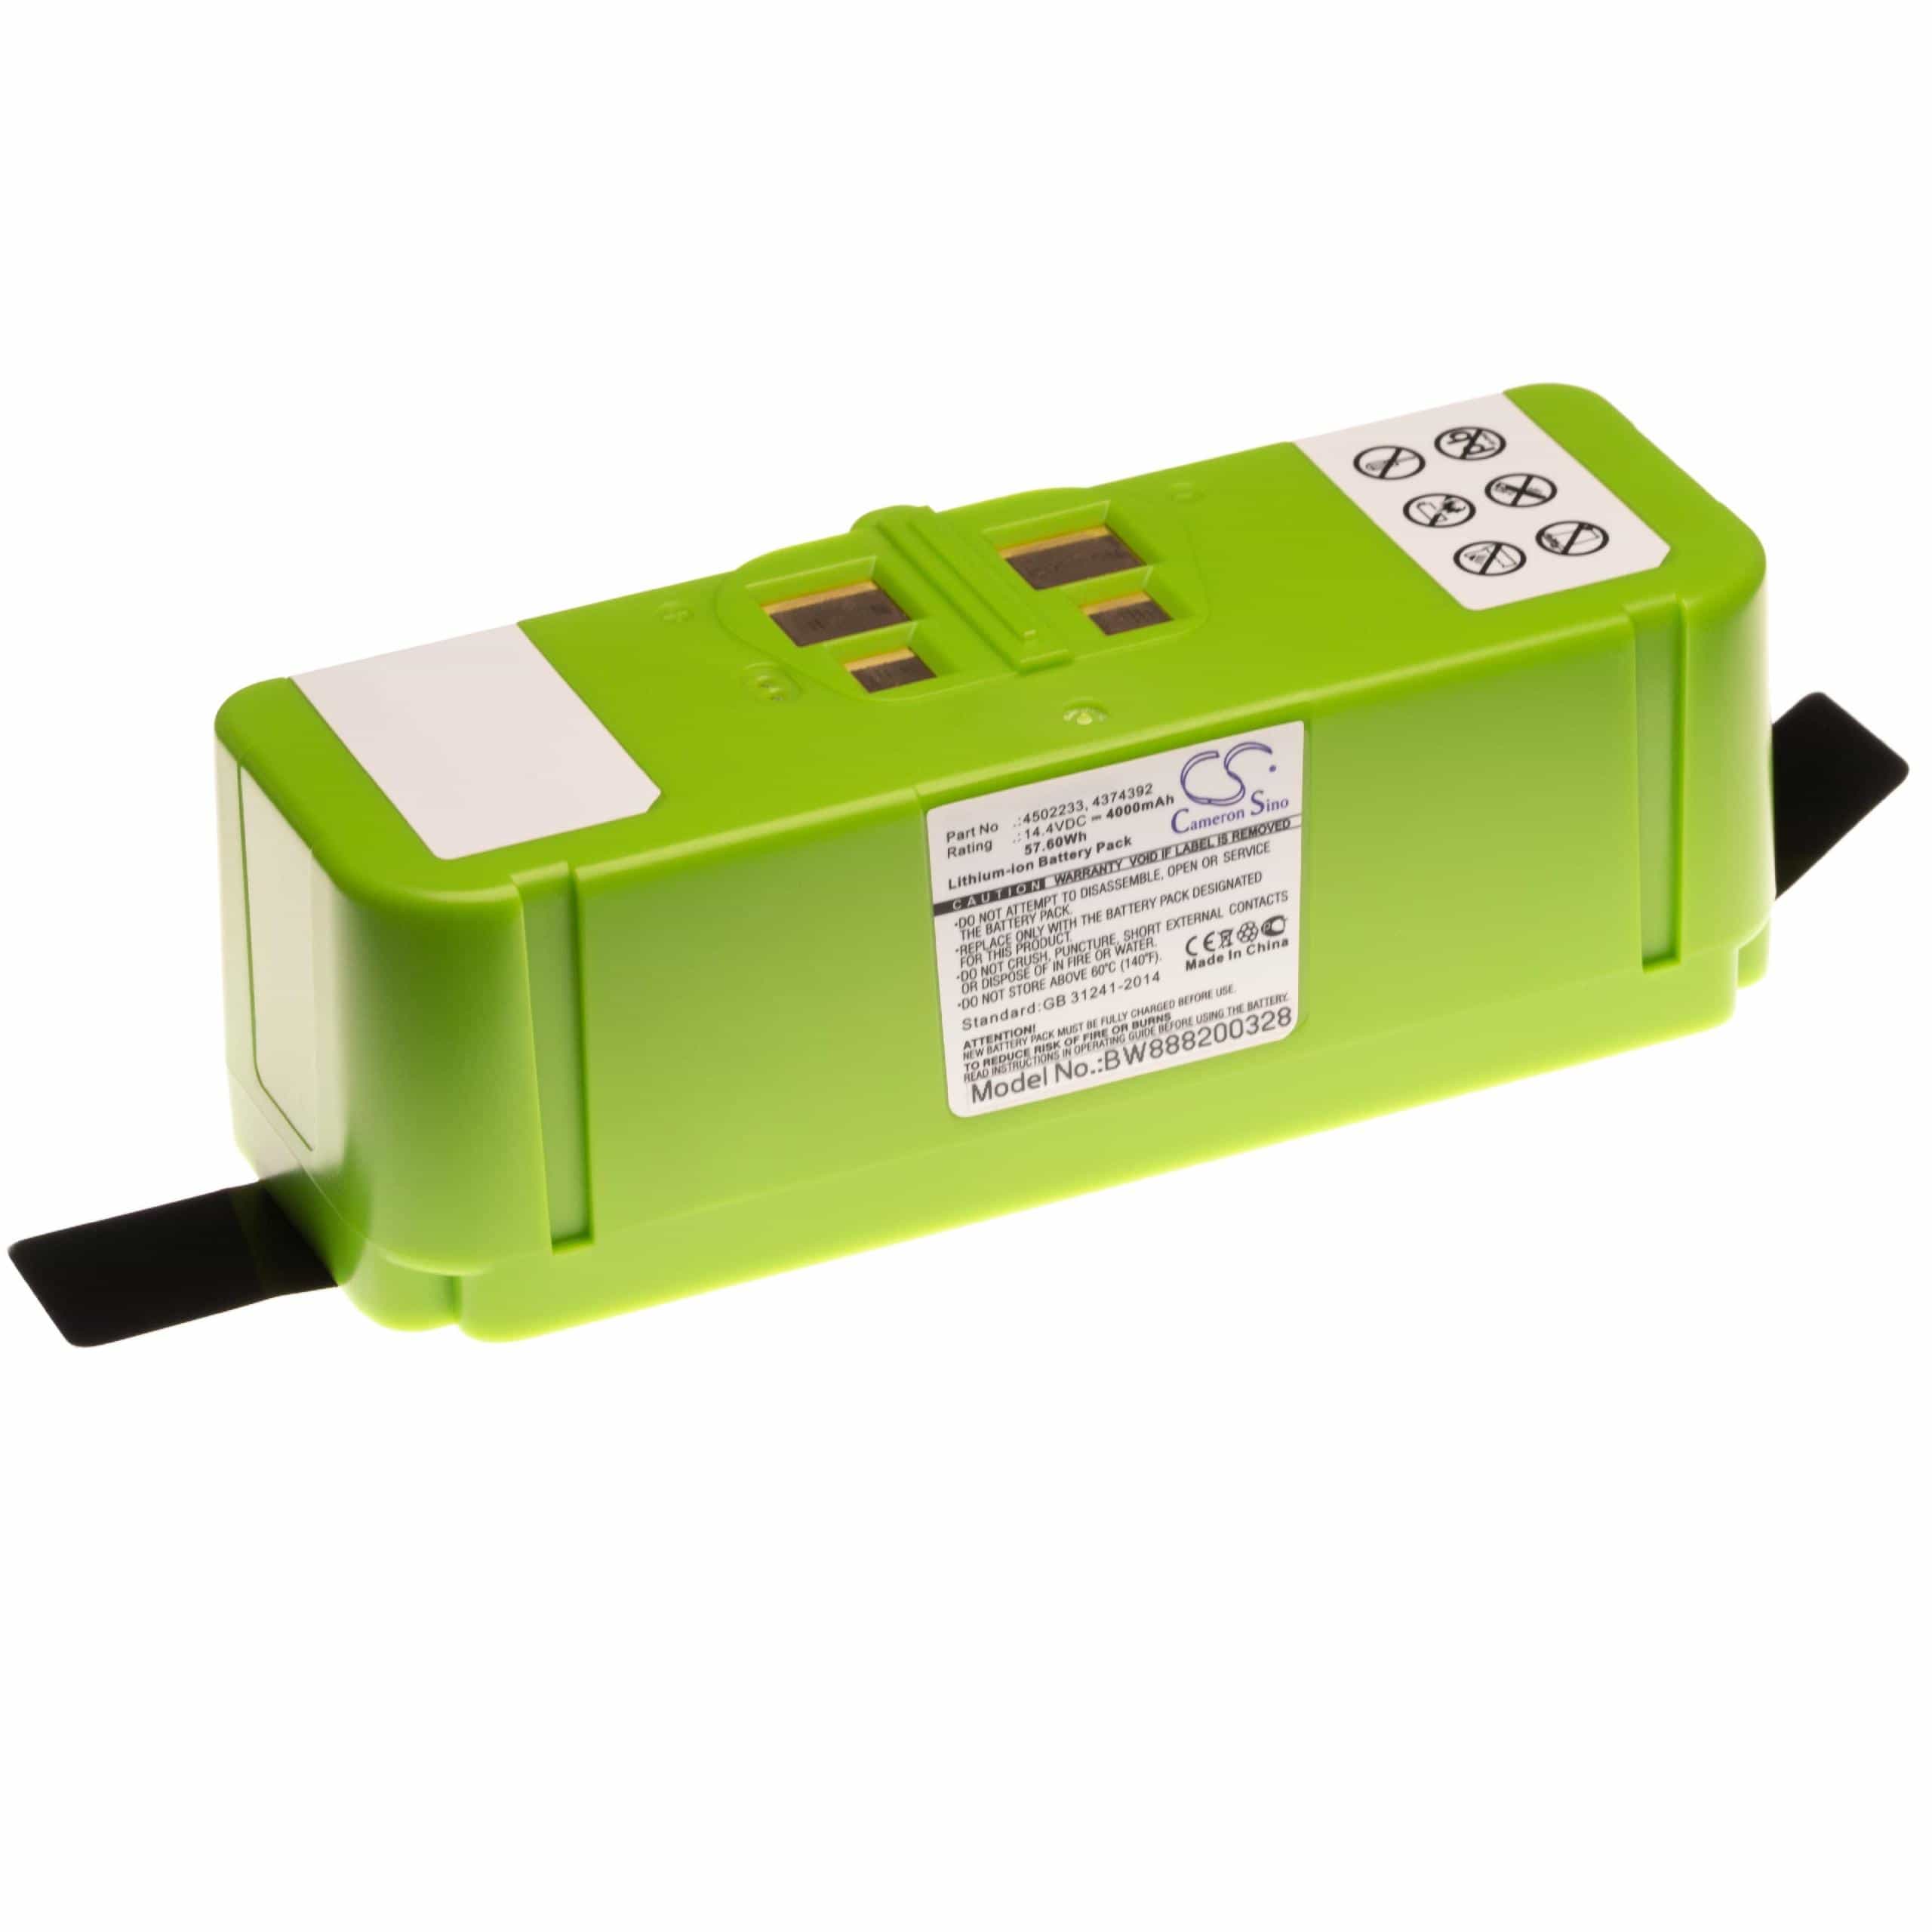 Batterie remplace iRobot 4374392, 4462425, 4376392, 2130LI pour robot aspirateur - 4000mAh 14,4V Li-ion